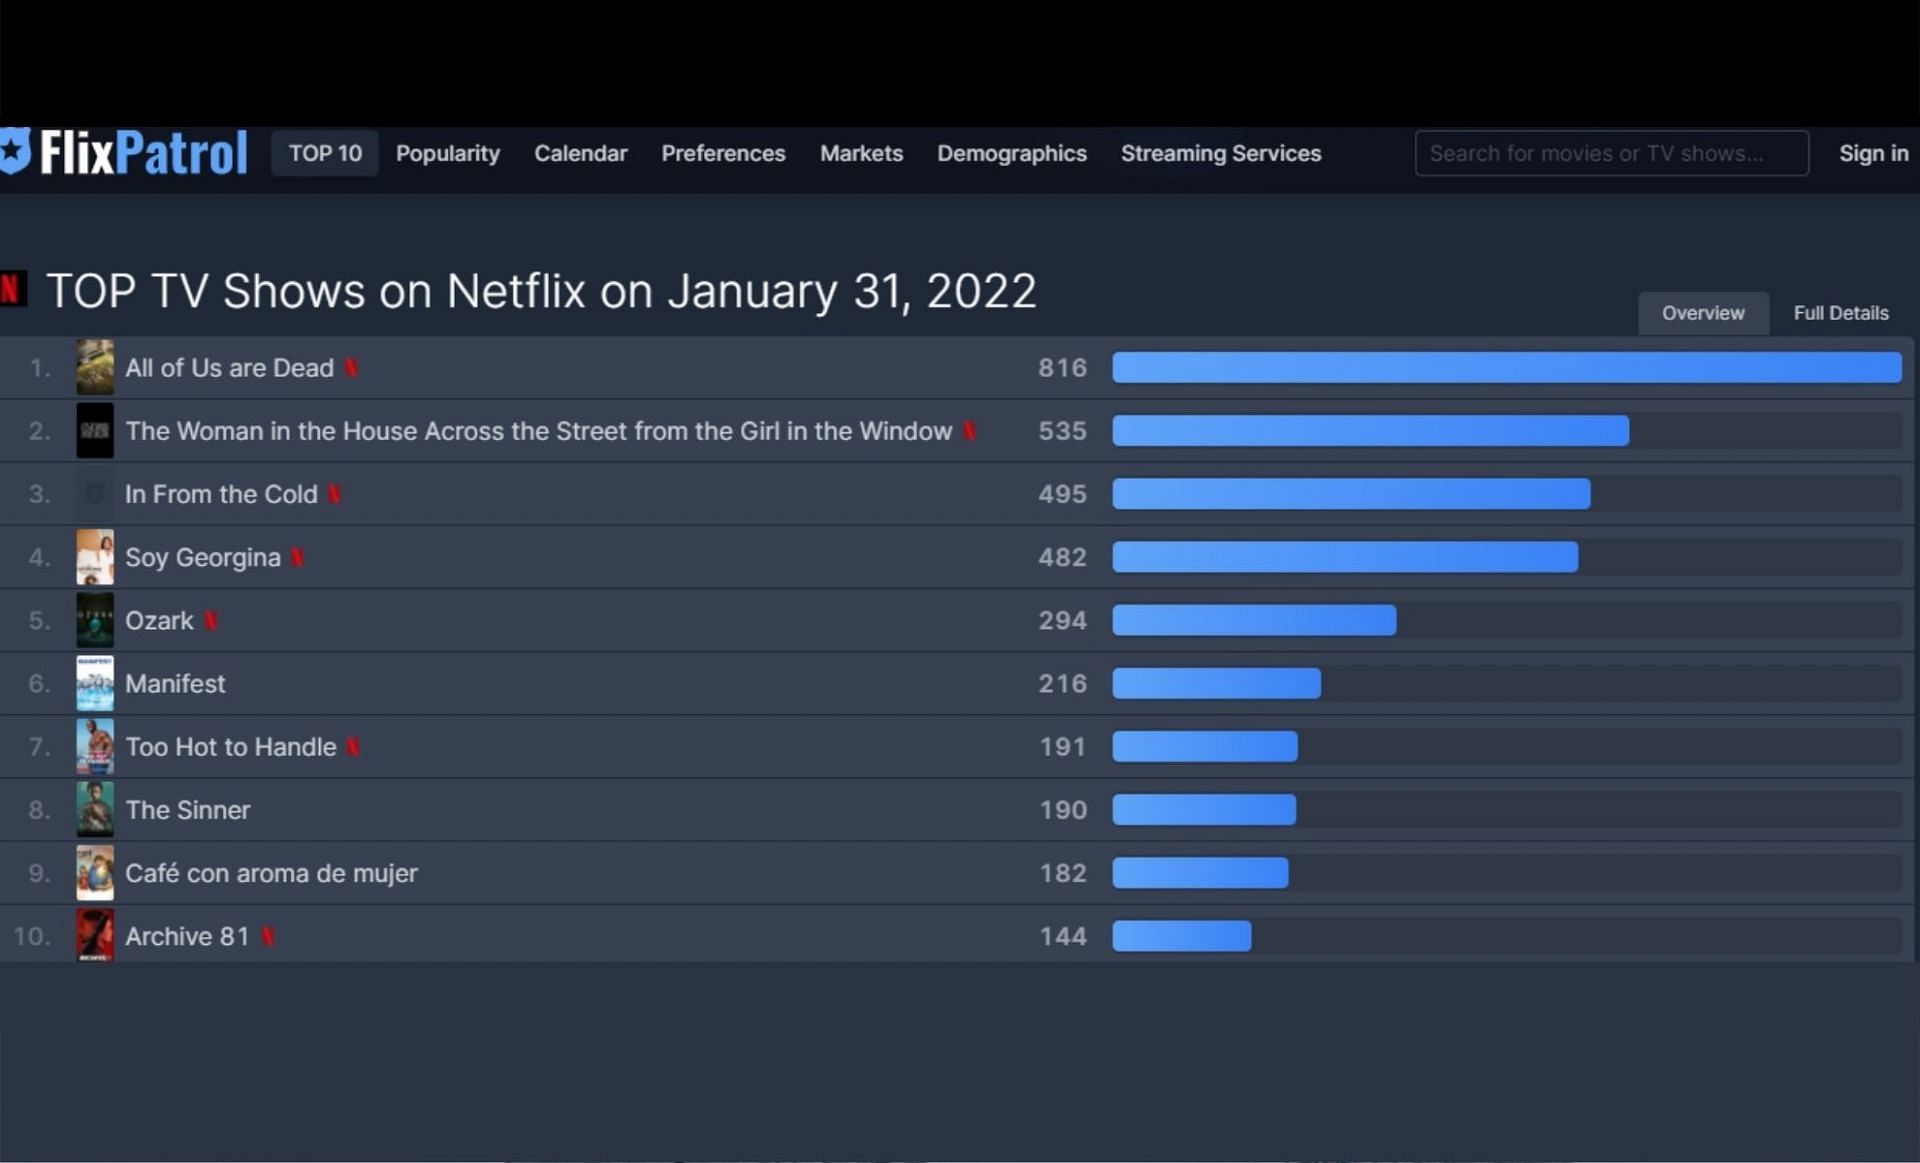 FlixPatrol Top TV Shows for January 31 (Screenshot via FLixPatrol website)